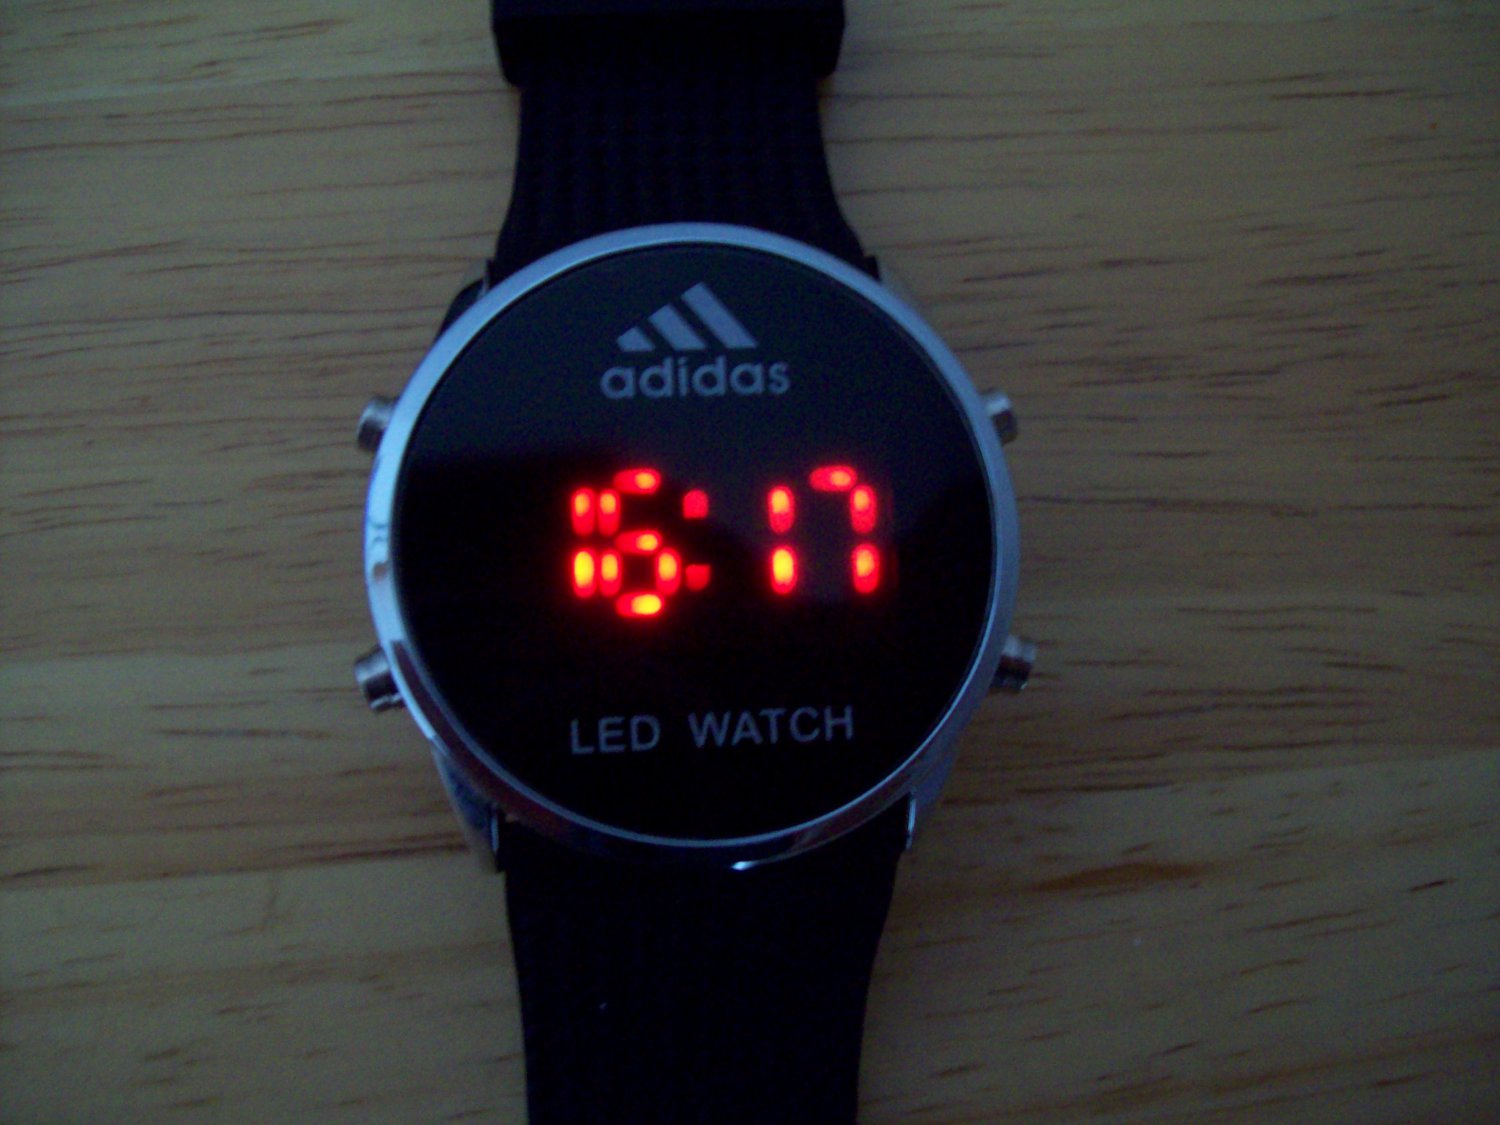 Led часы настройка. Адидас лед вотч часы. Часы adidas h1416. Часы адидас k8943. Часы адидас led watch круглые.